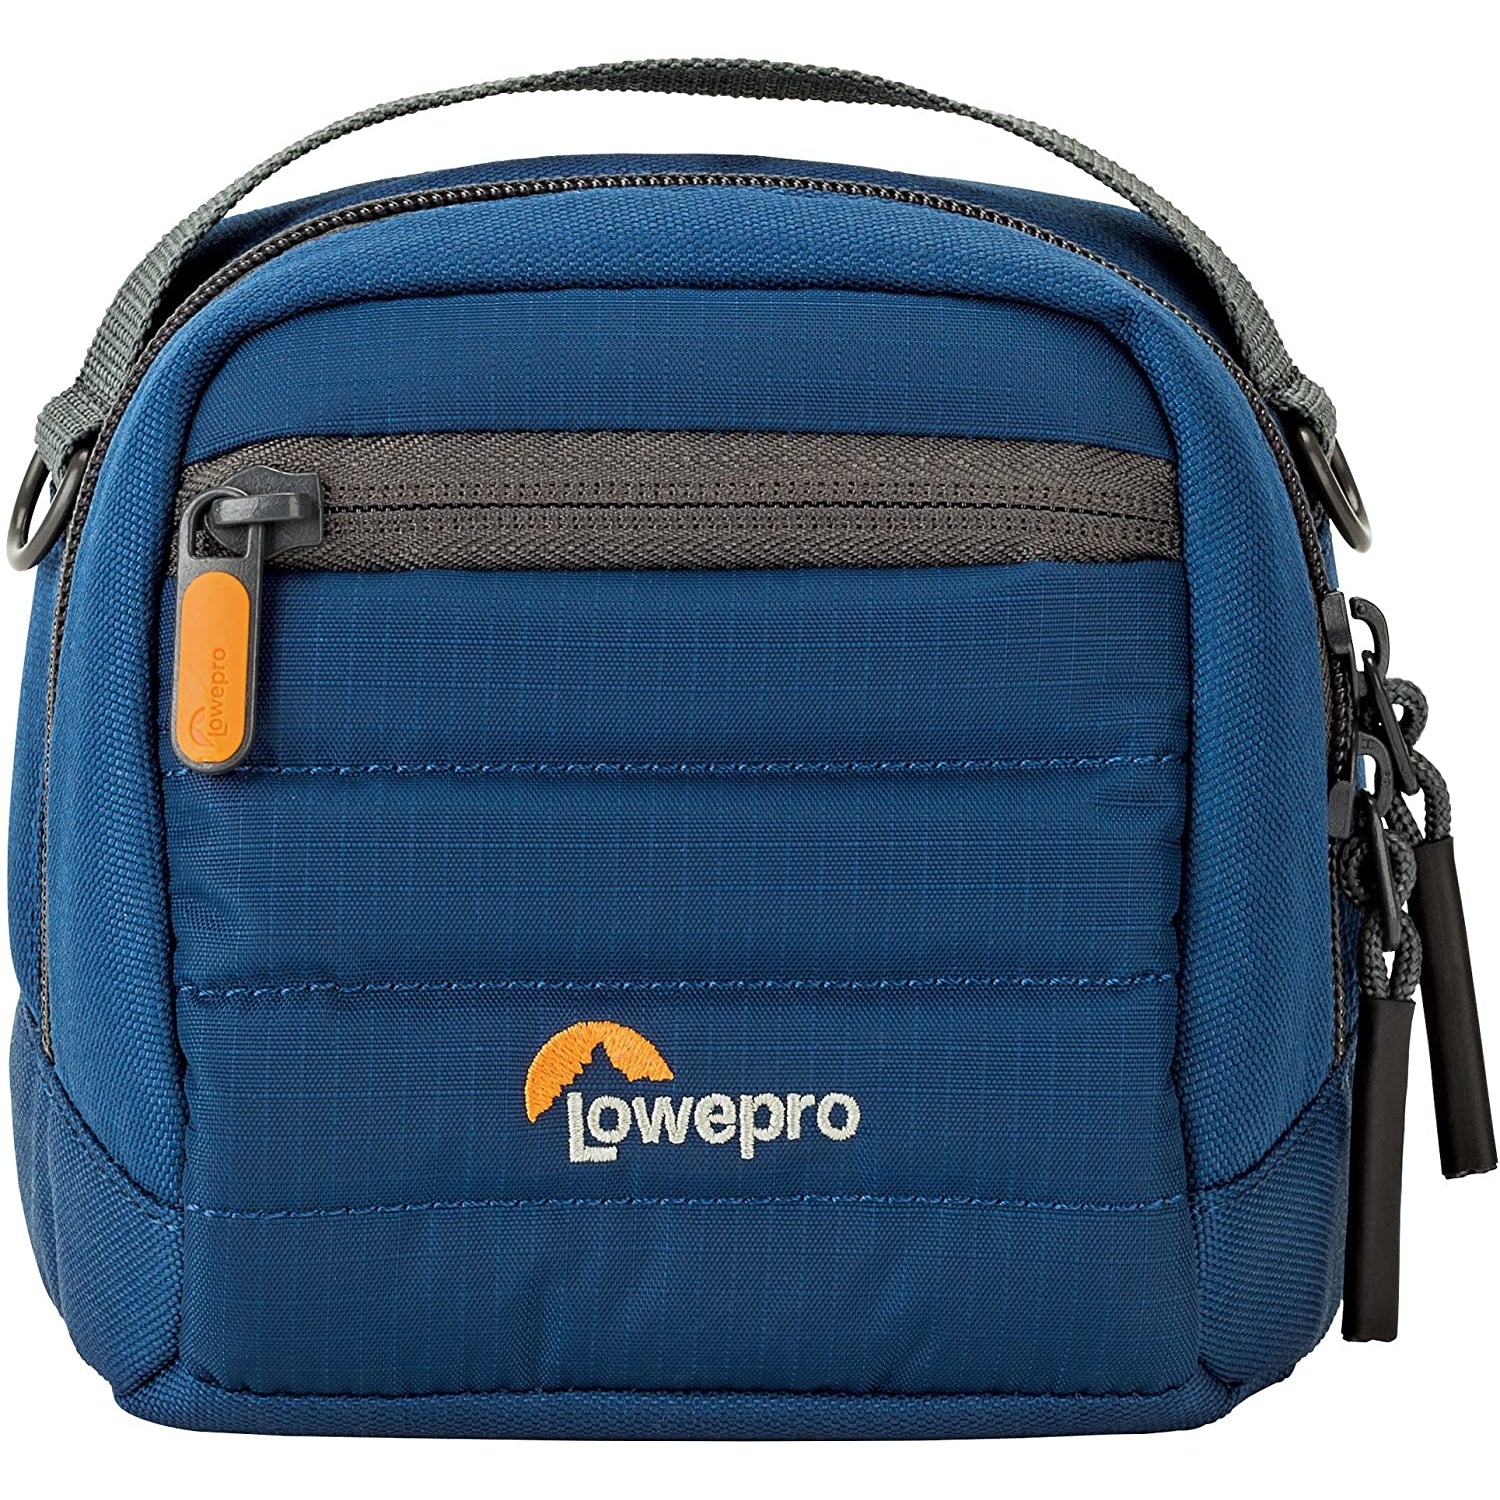 Lowepro Tahoe CS 80 Case, Fits Fujifilm Instax Mini Cameras, Blue - Refurbished